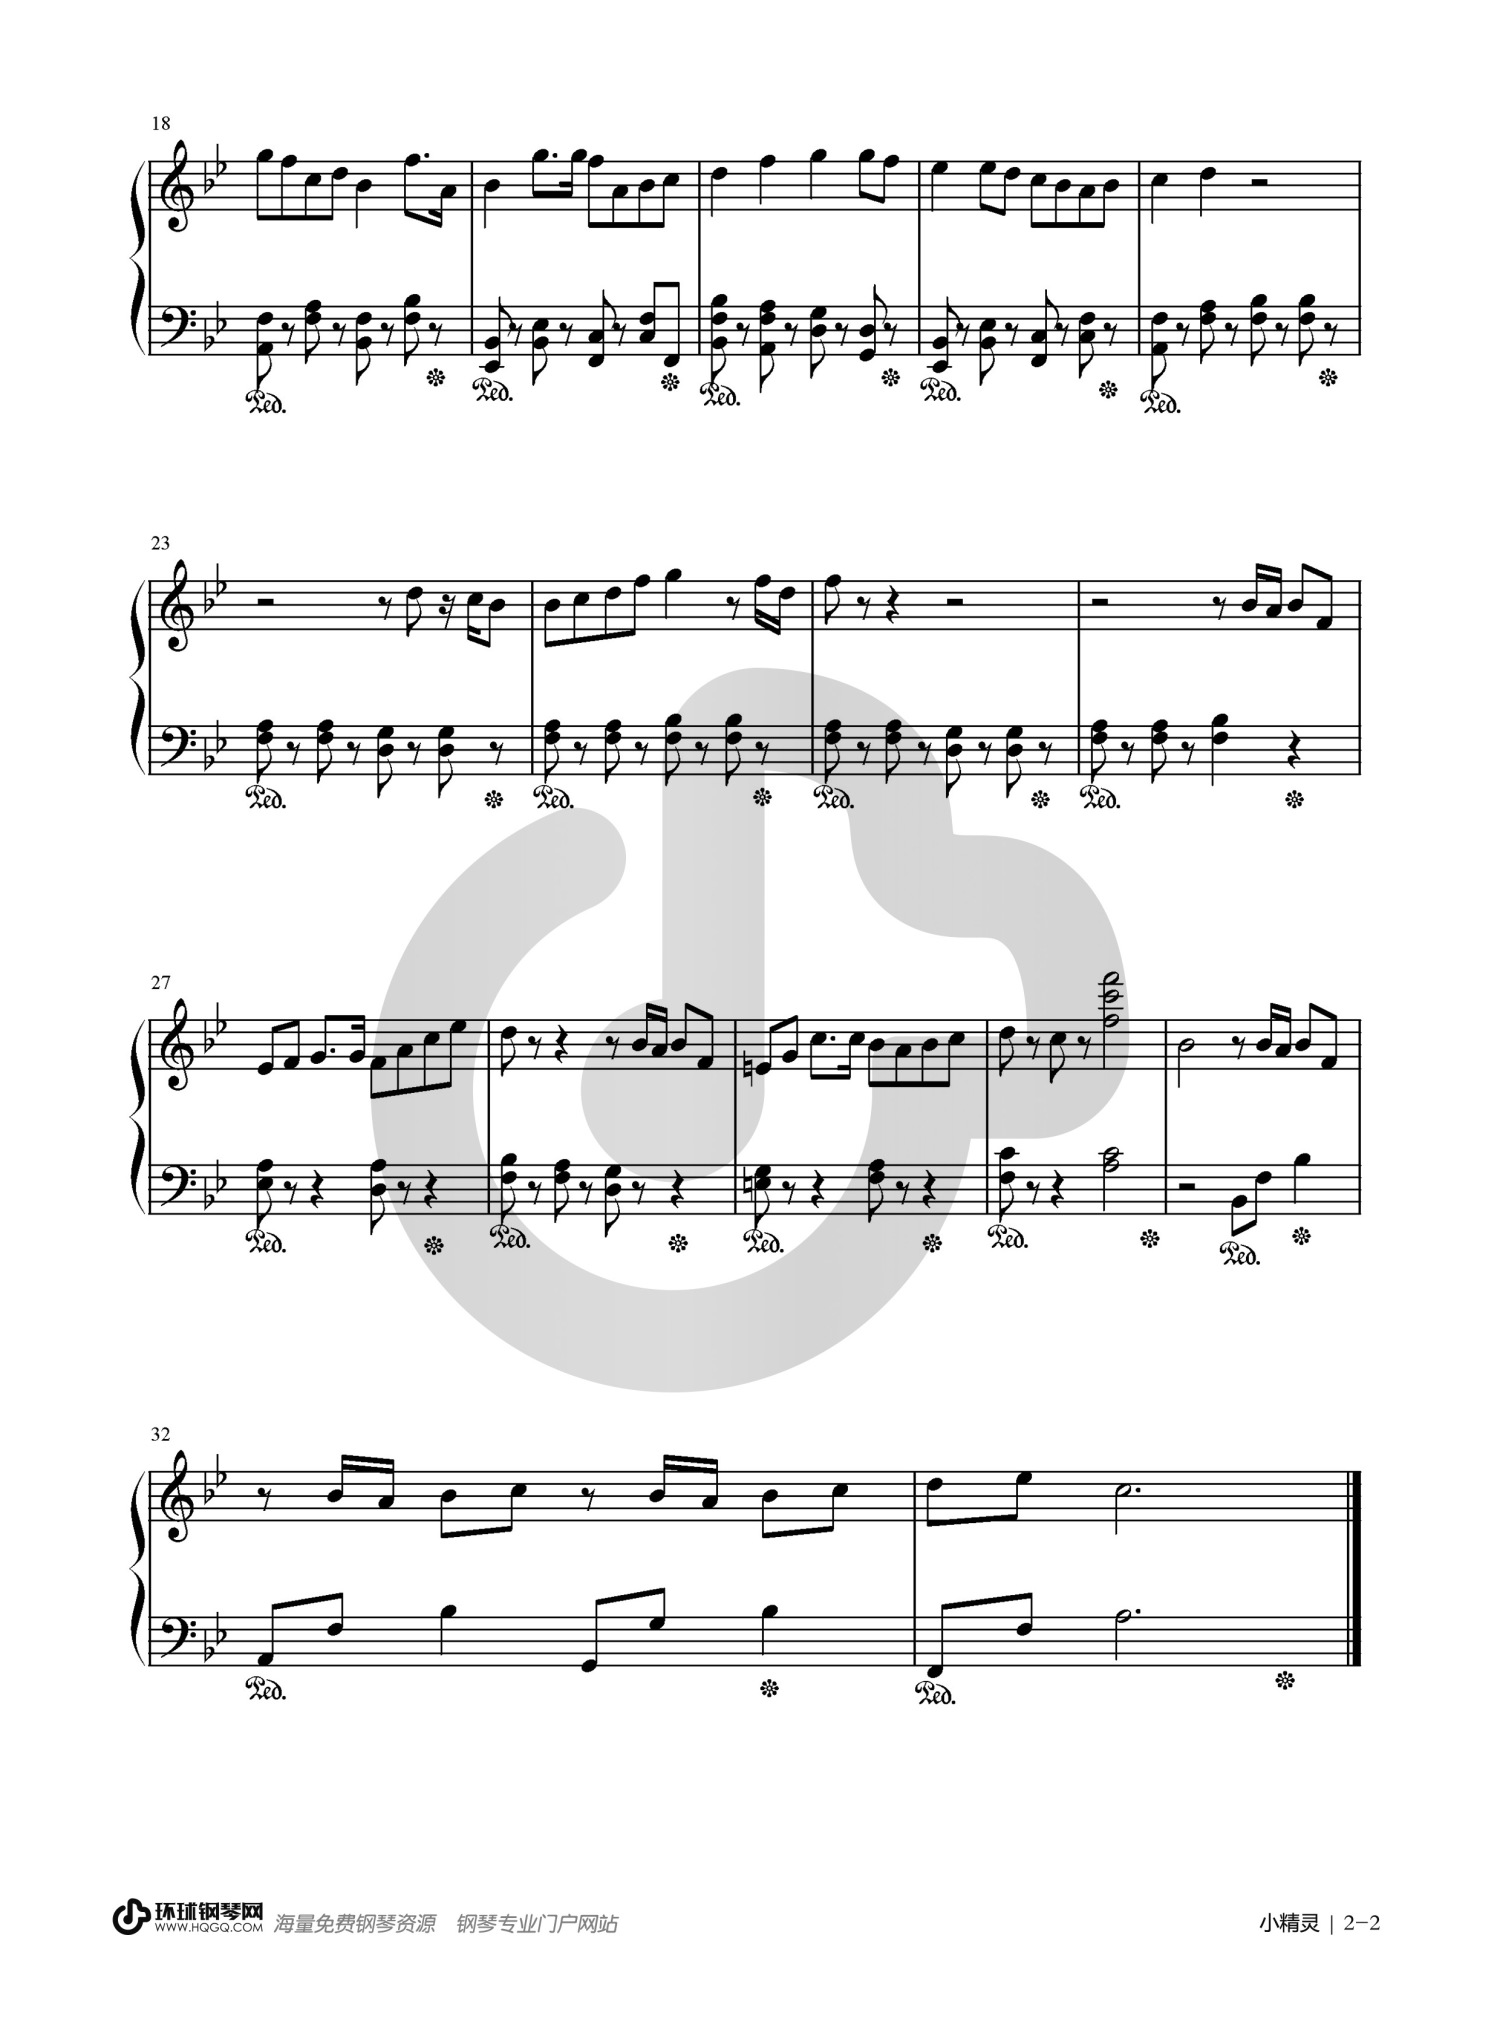 小精灵-TFBOYS双手简谱预览1-钢琴谱文件（五线谱、双手简谱、数字谱、Midi、PDF）免费下载